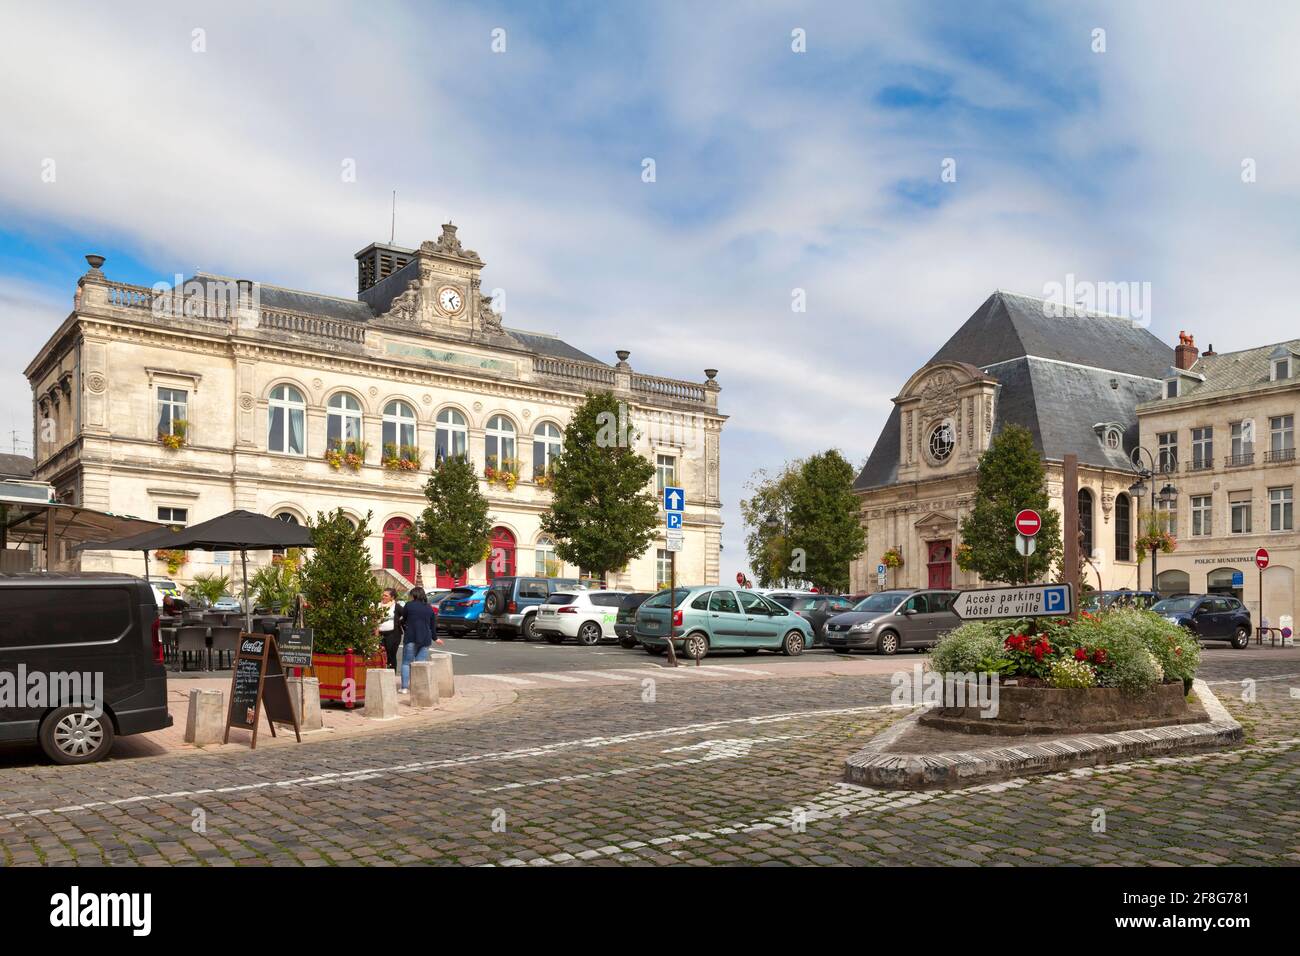 Laon, France - juin 10 2020 : l'hôtel de ville est situé dans la ville haute de Laon, dans le département de l'Aisne. Banque D'Images